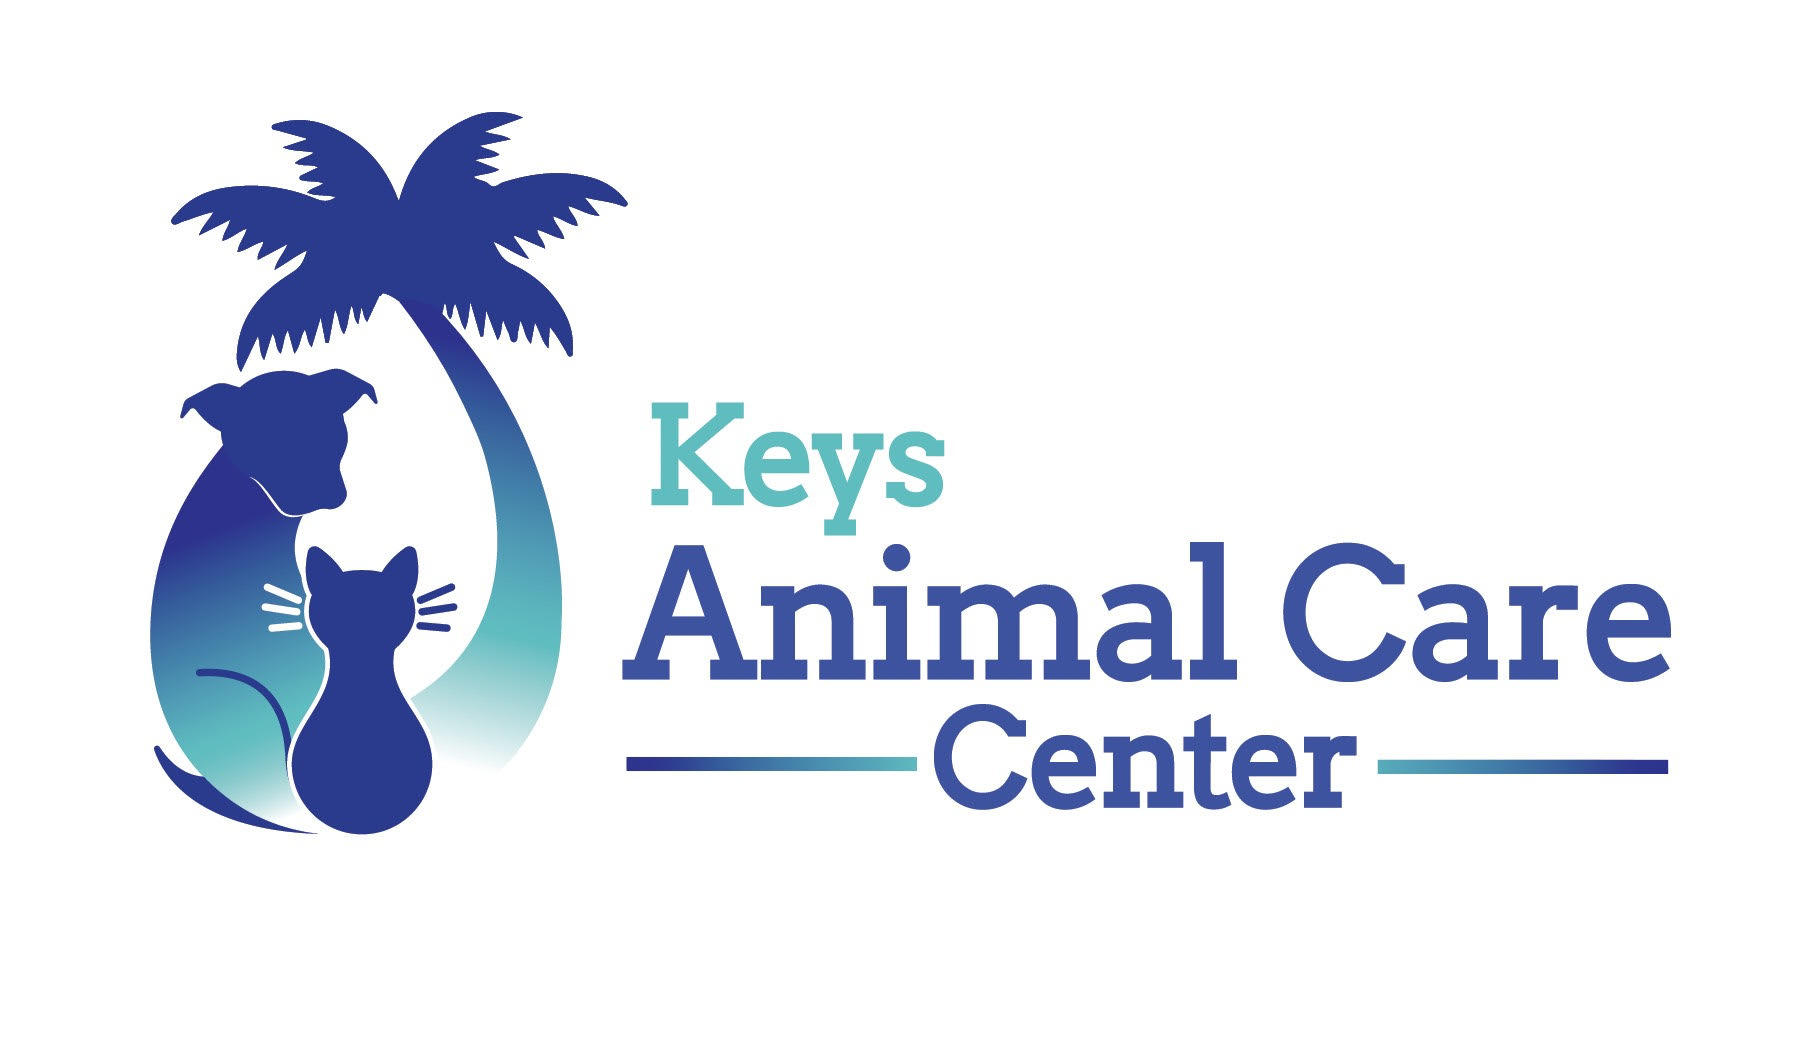 Keys Animal Care Center